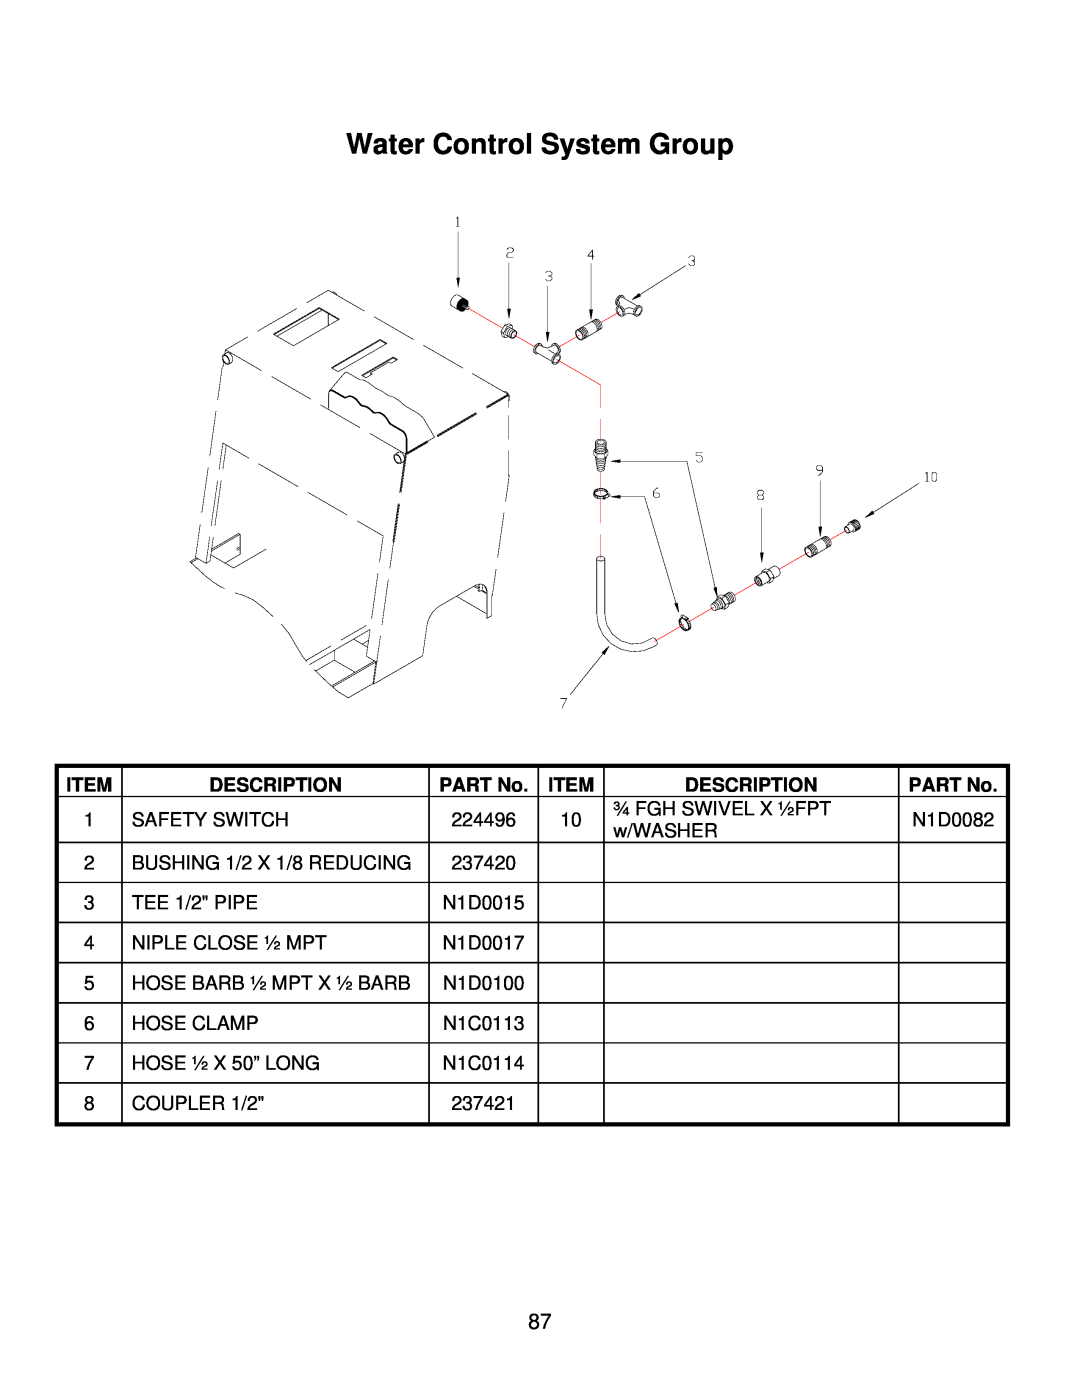 Norton Abrasives C3130, C3120, C6120, C3126, C6136, C6130, C6126 owner manual Water Control System Group, Description 